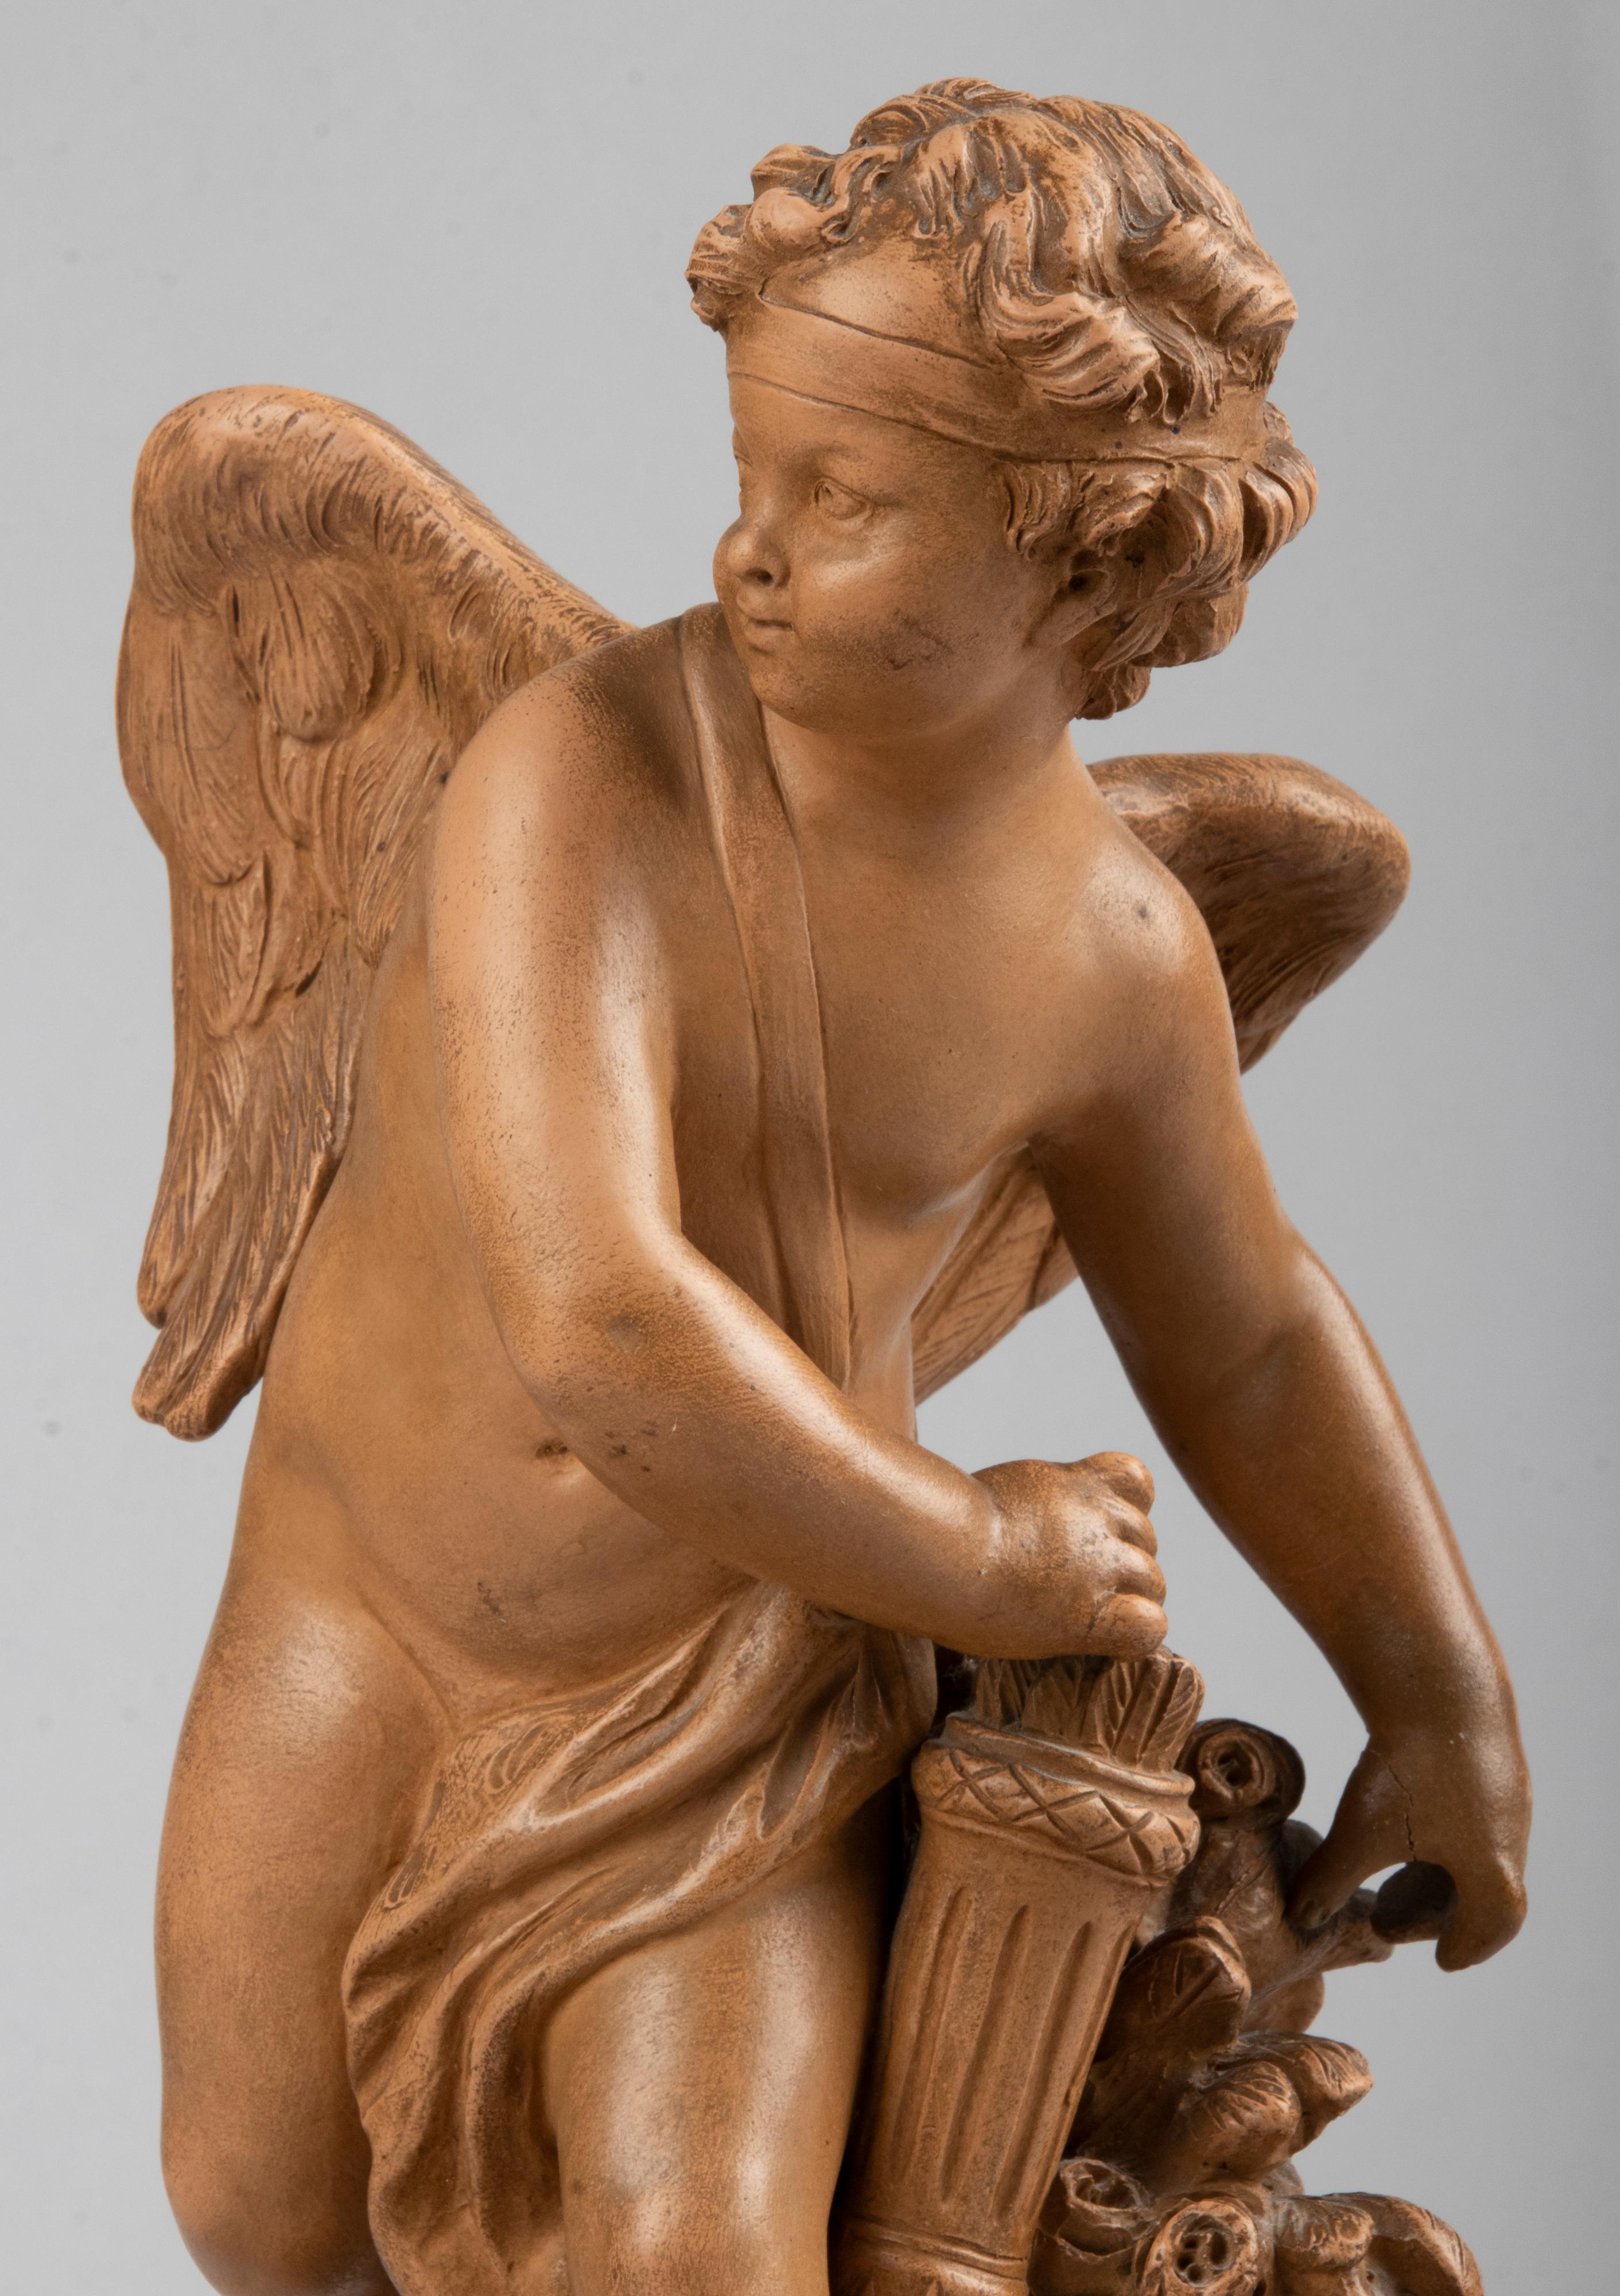 Belle sculpture ancienne en terre cuite, représentant Cupidon prenant une flèche de son carquois pour la tirer avec son arc. La statue s'inspire d'une célèbre œuvre du 18e siècle réalisée par le sculpteur Etienne Maurice Falconet (1716-1791). La